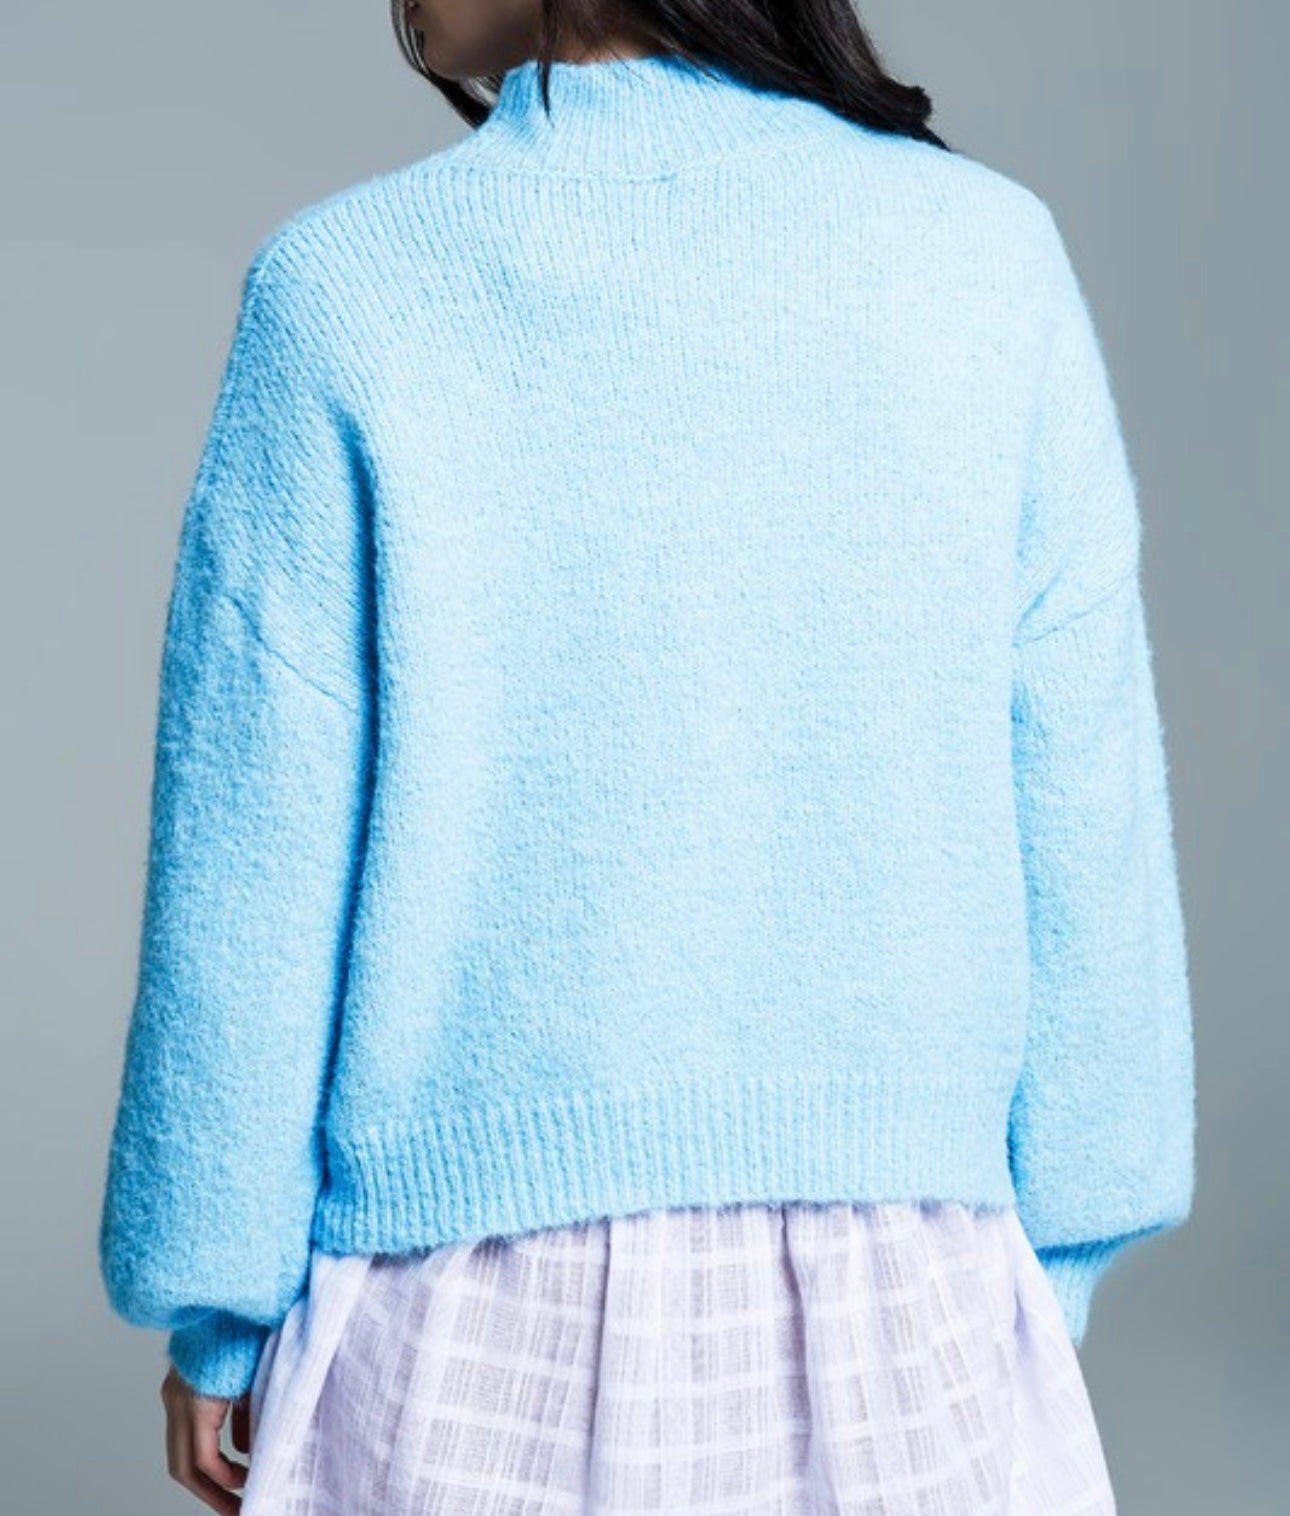 Sky blue sweater